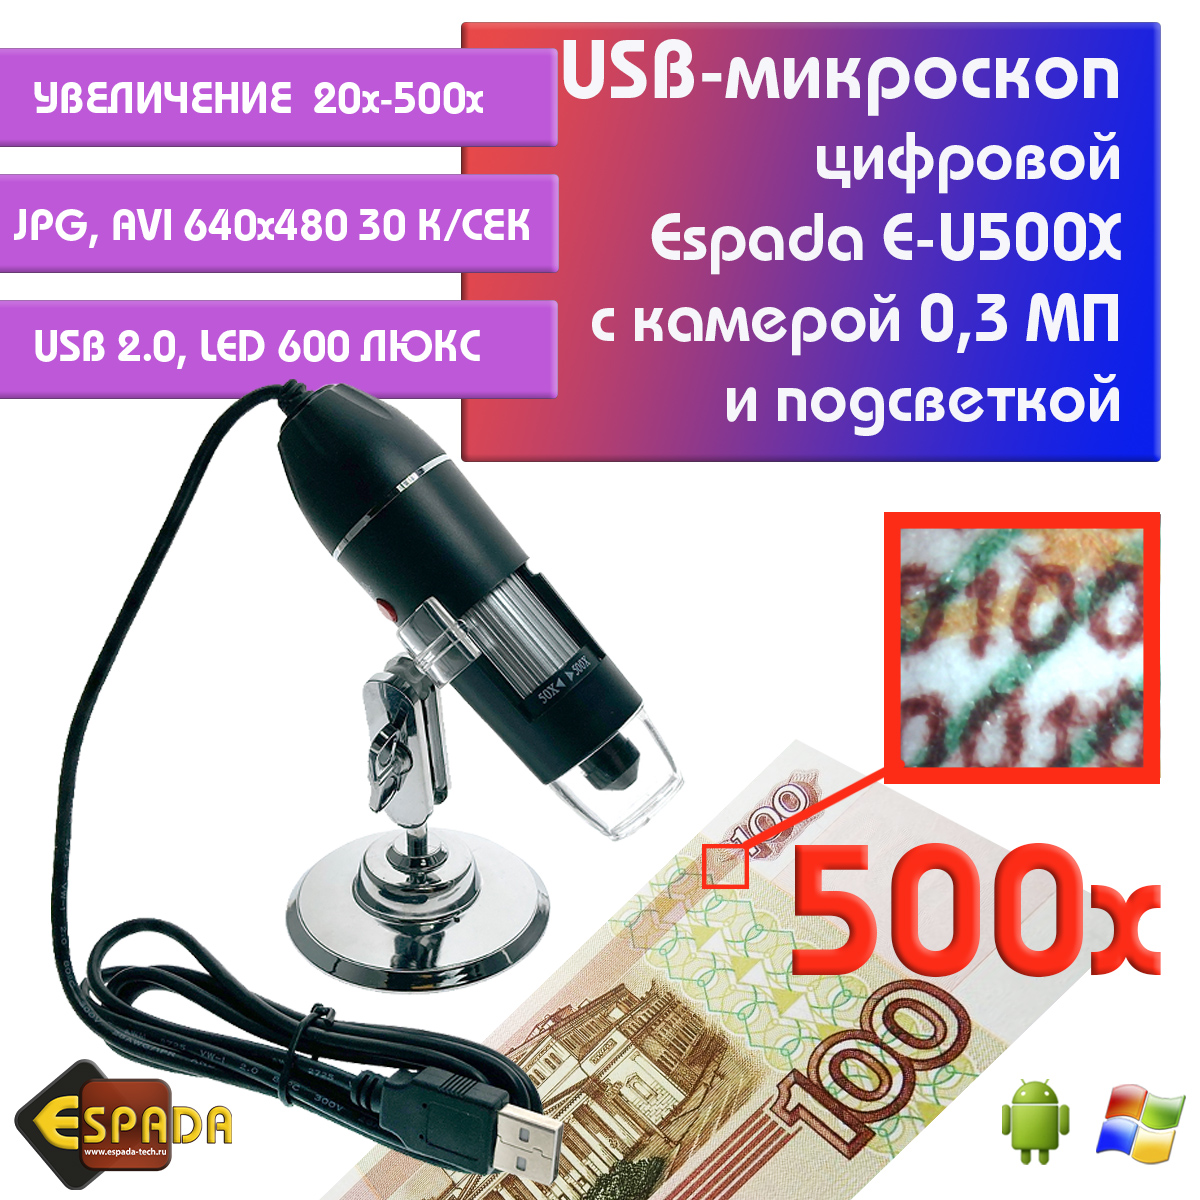 Портативный цифровой USB-микроскоп Espada E-U500X c камерой 0,3 МП и увеличением 500x микроскоп монокуляр espada usb g1200b с дисплеем 7 и подставкой